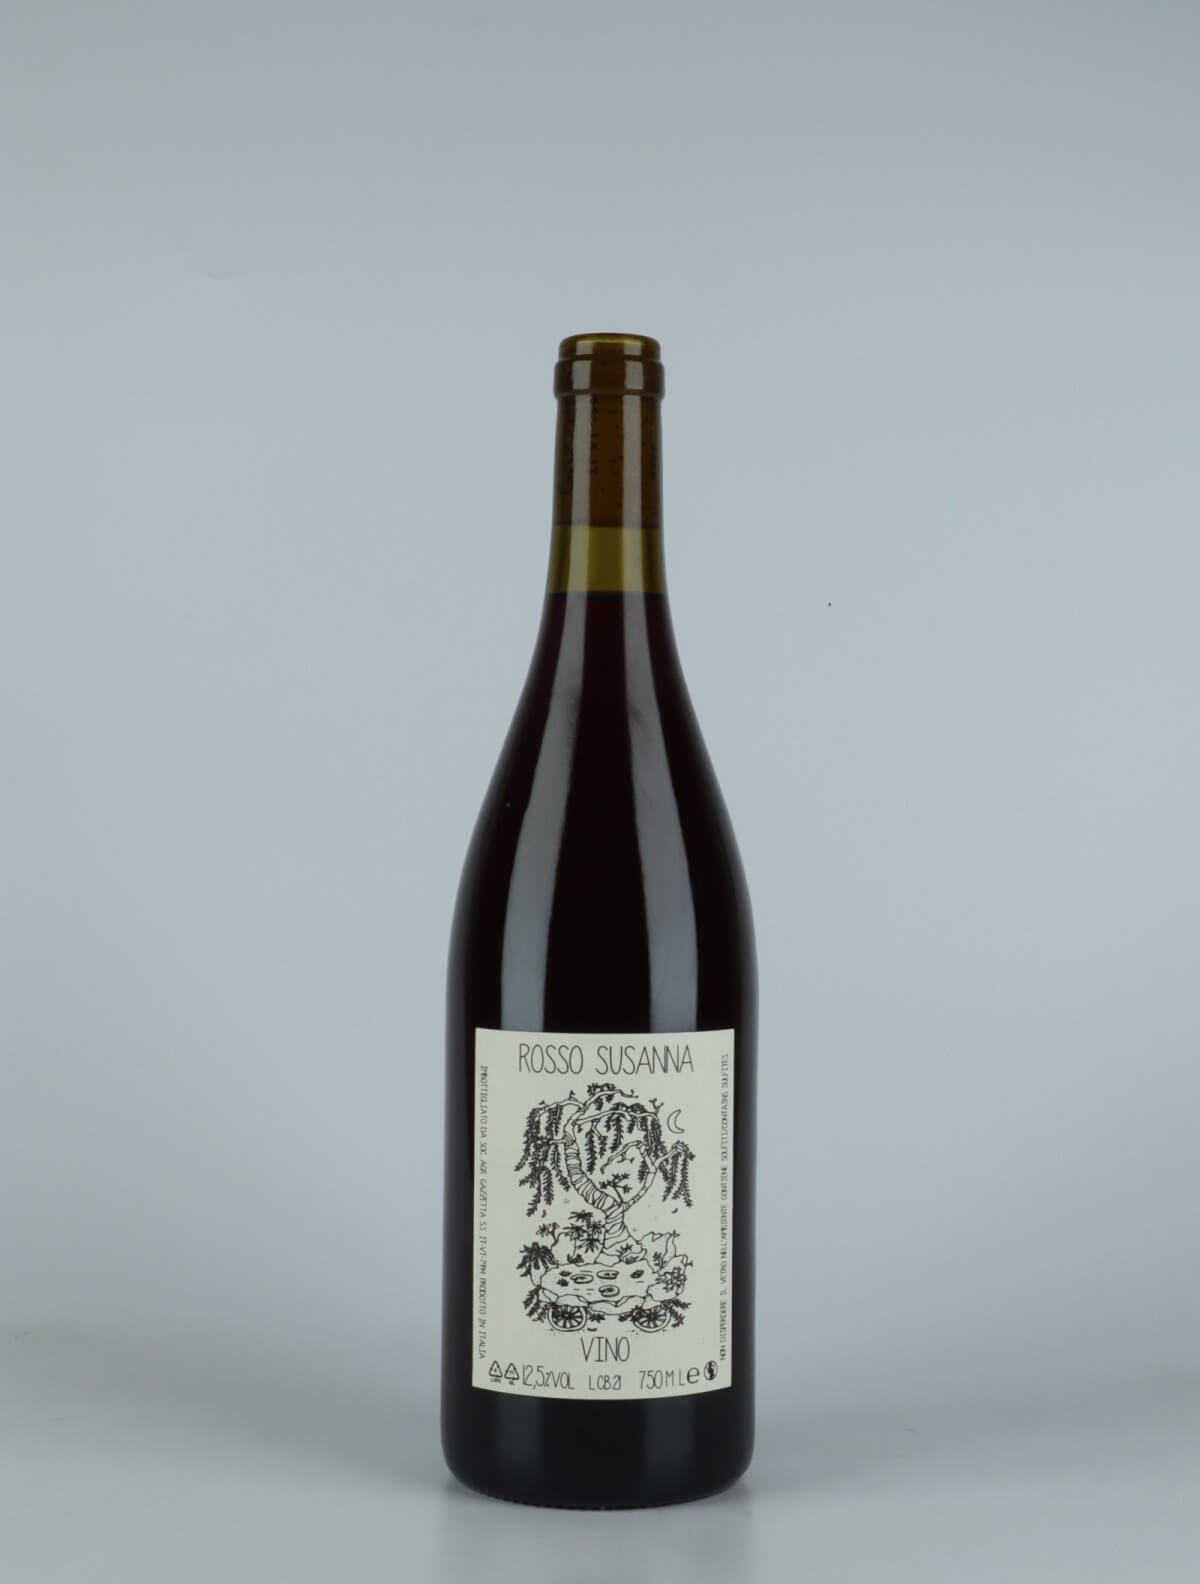 A bottle 2021 Vino Rosso Susanna Red wine from Gazzetta, Lazio in Italy